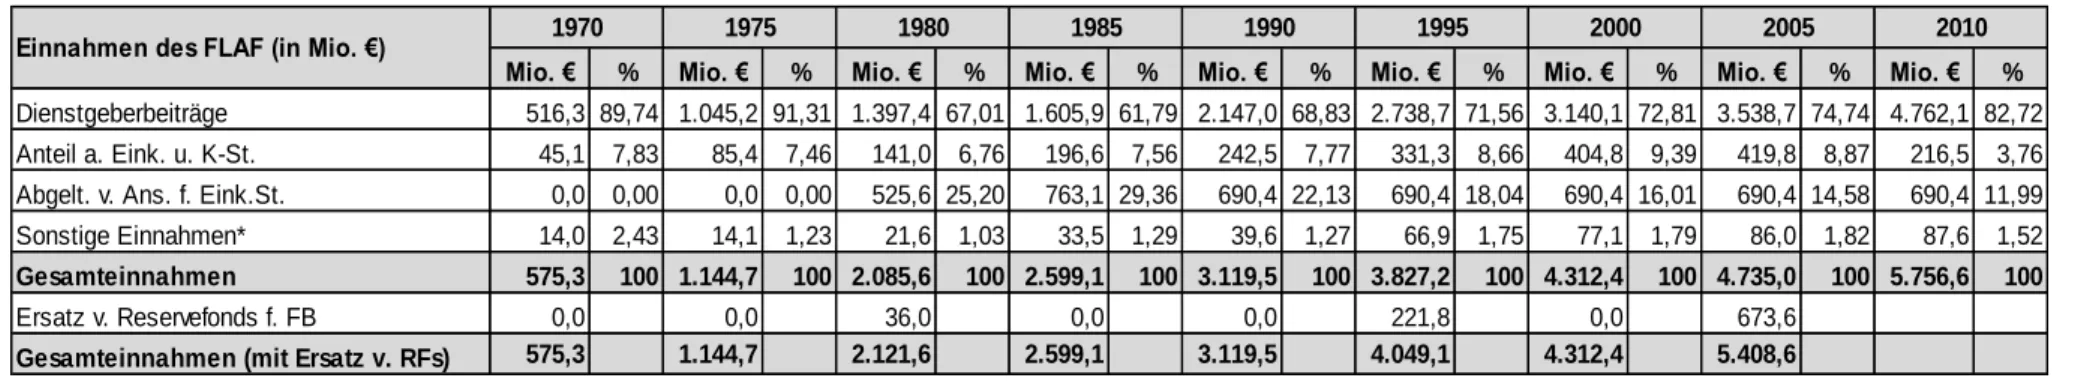 Tab. 5: Einnahmen des FLAF in Mio. €, nominell (1970-2010) 